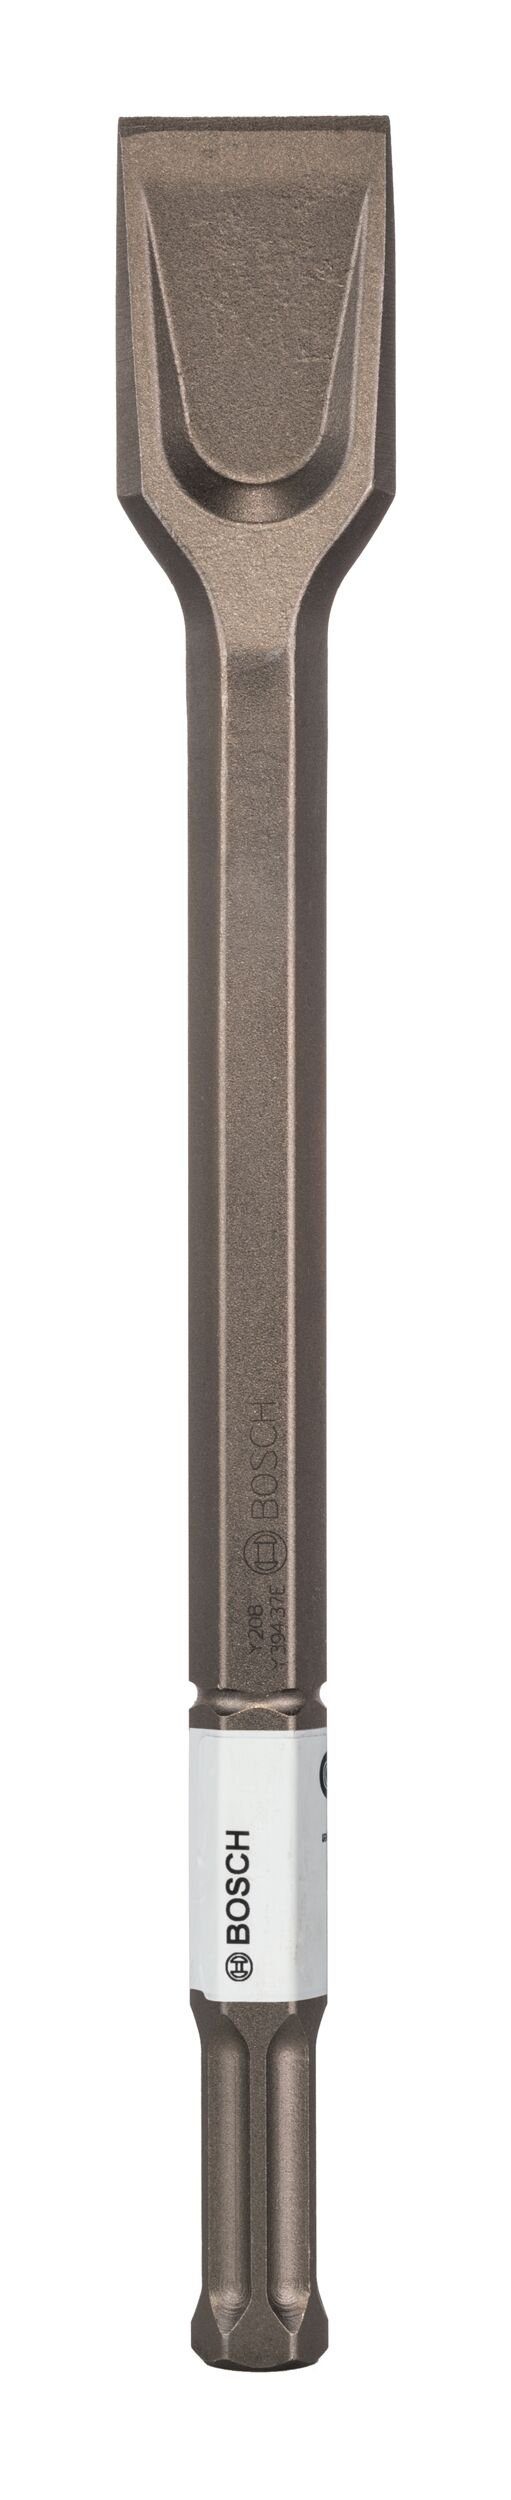 BOSCH Steinbohrer, Spatmeißel mit 22-mm-Sechskantaufnahme 50 mm - 400 x